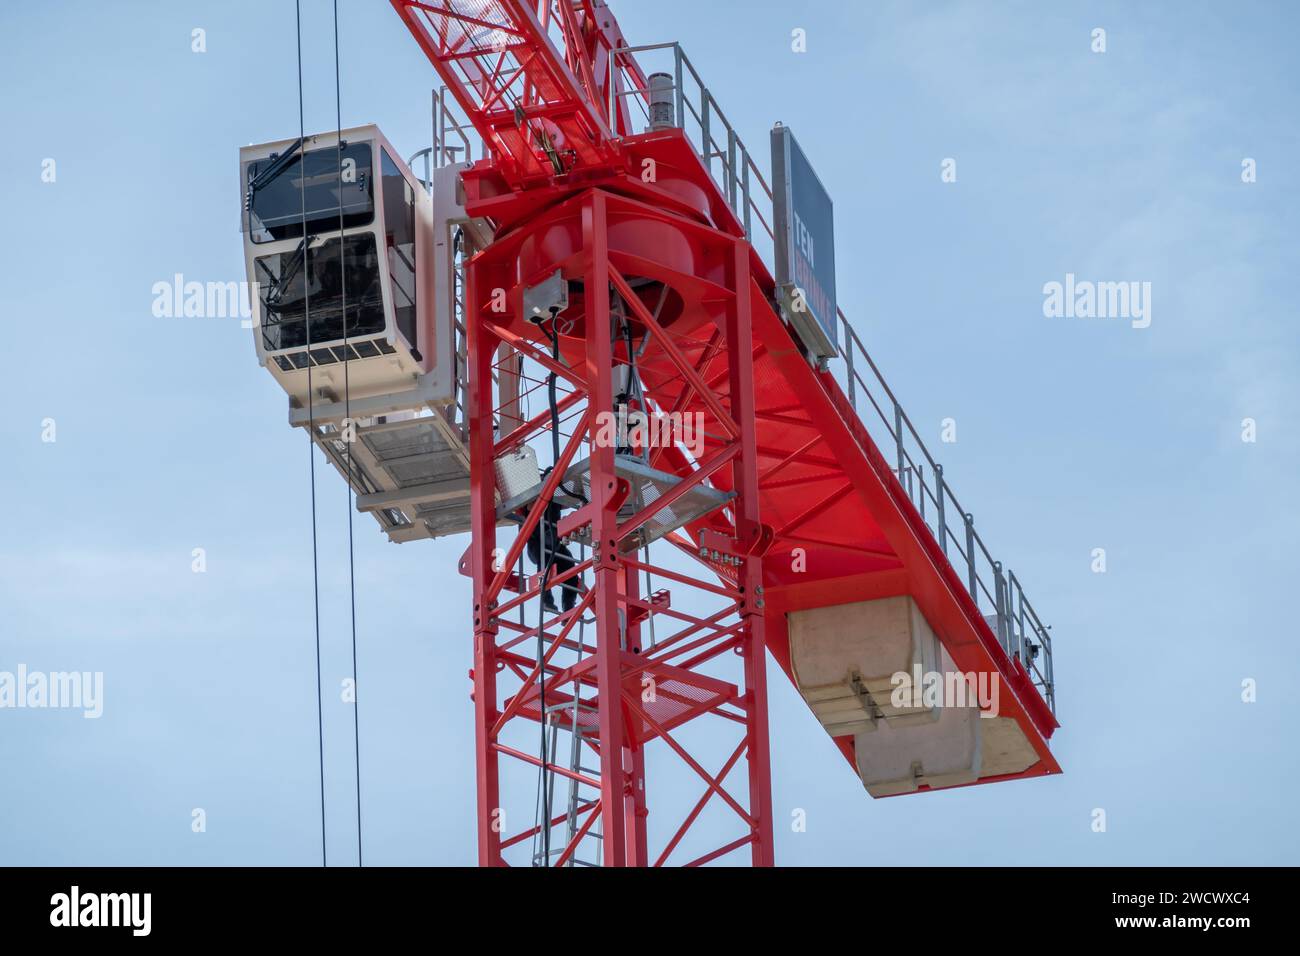 Detail des roten Turmdrehkrans mit Teleskopausleger, Treppen und Kabine für Arbeiter, Niederlande Stockfoto